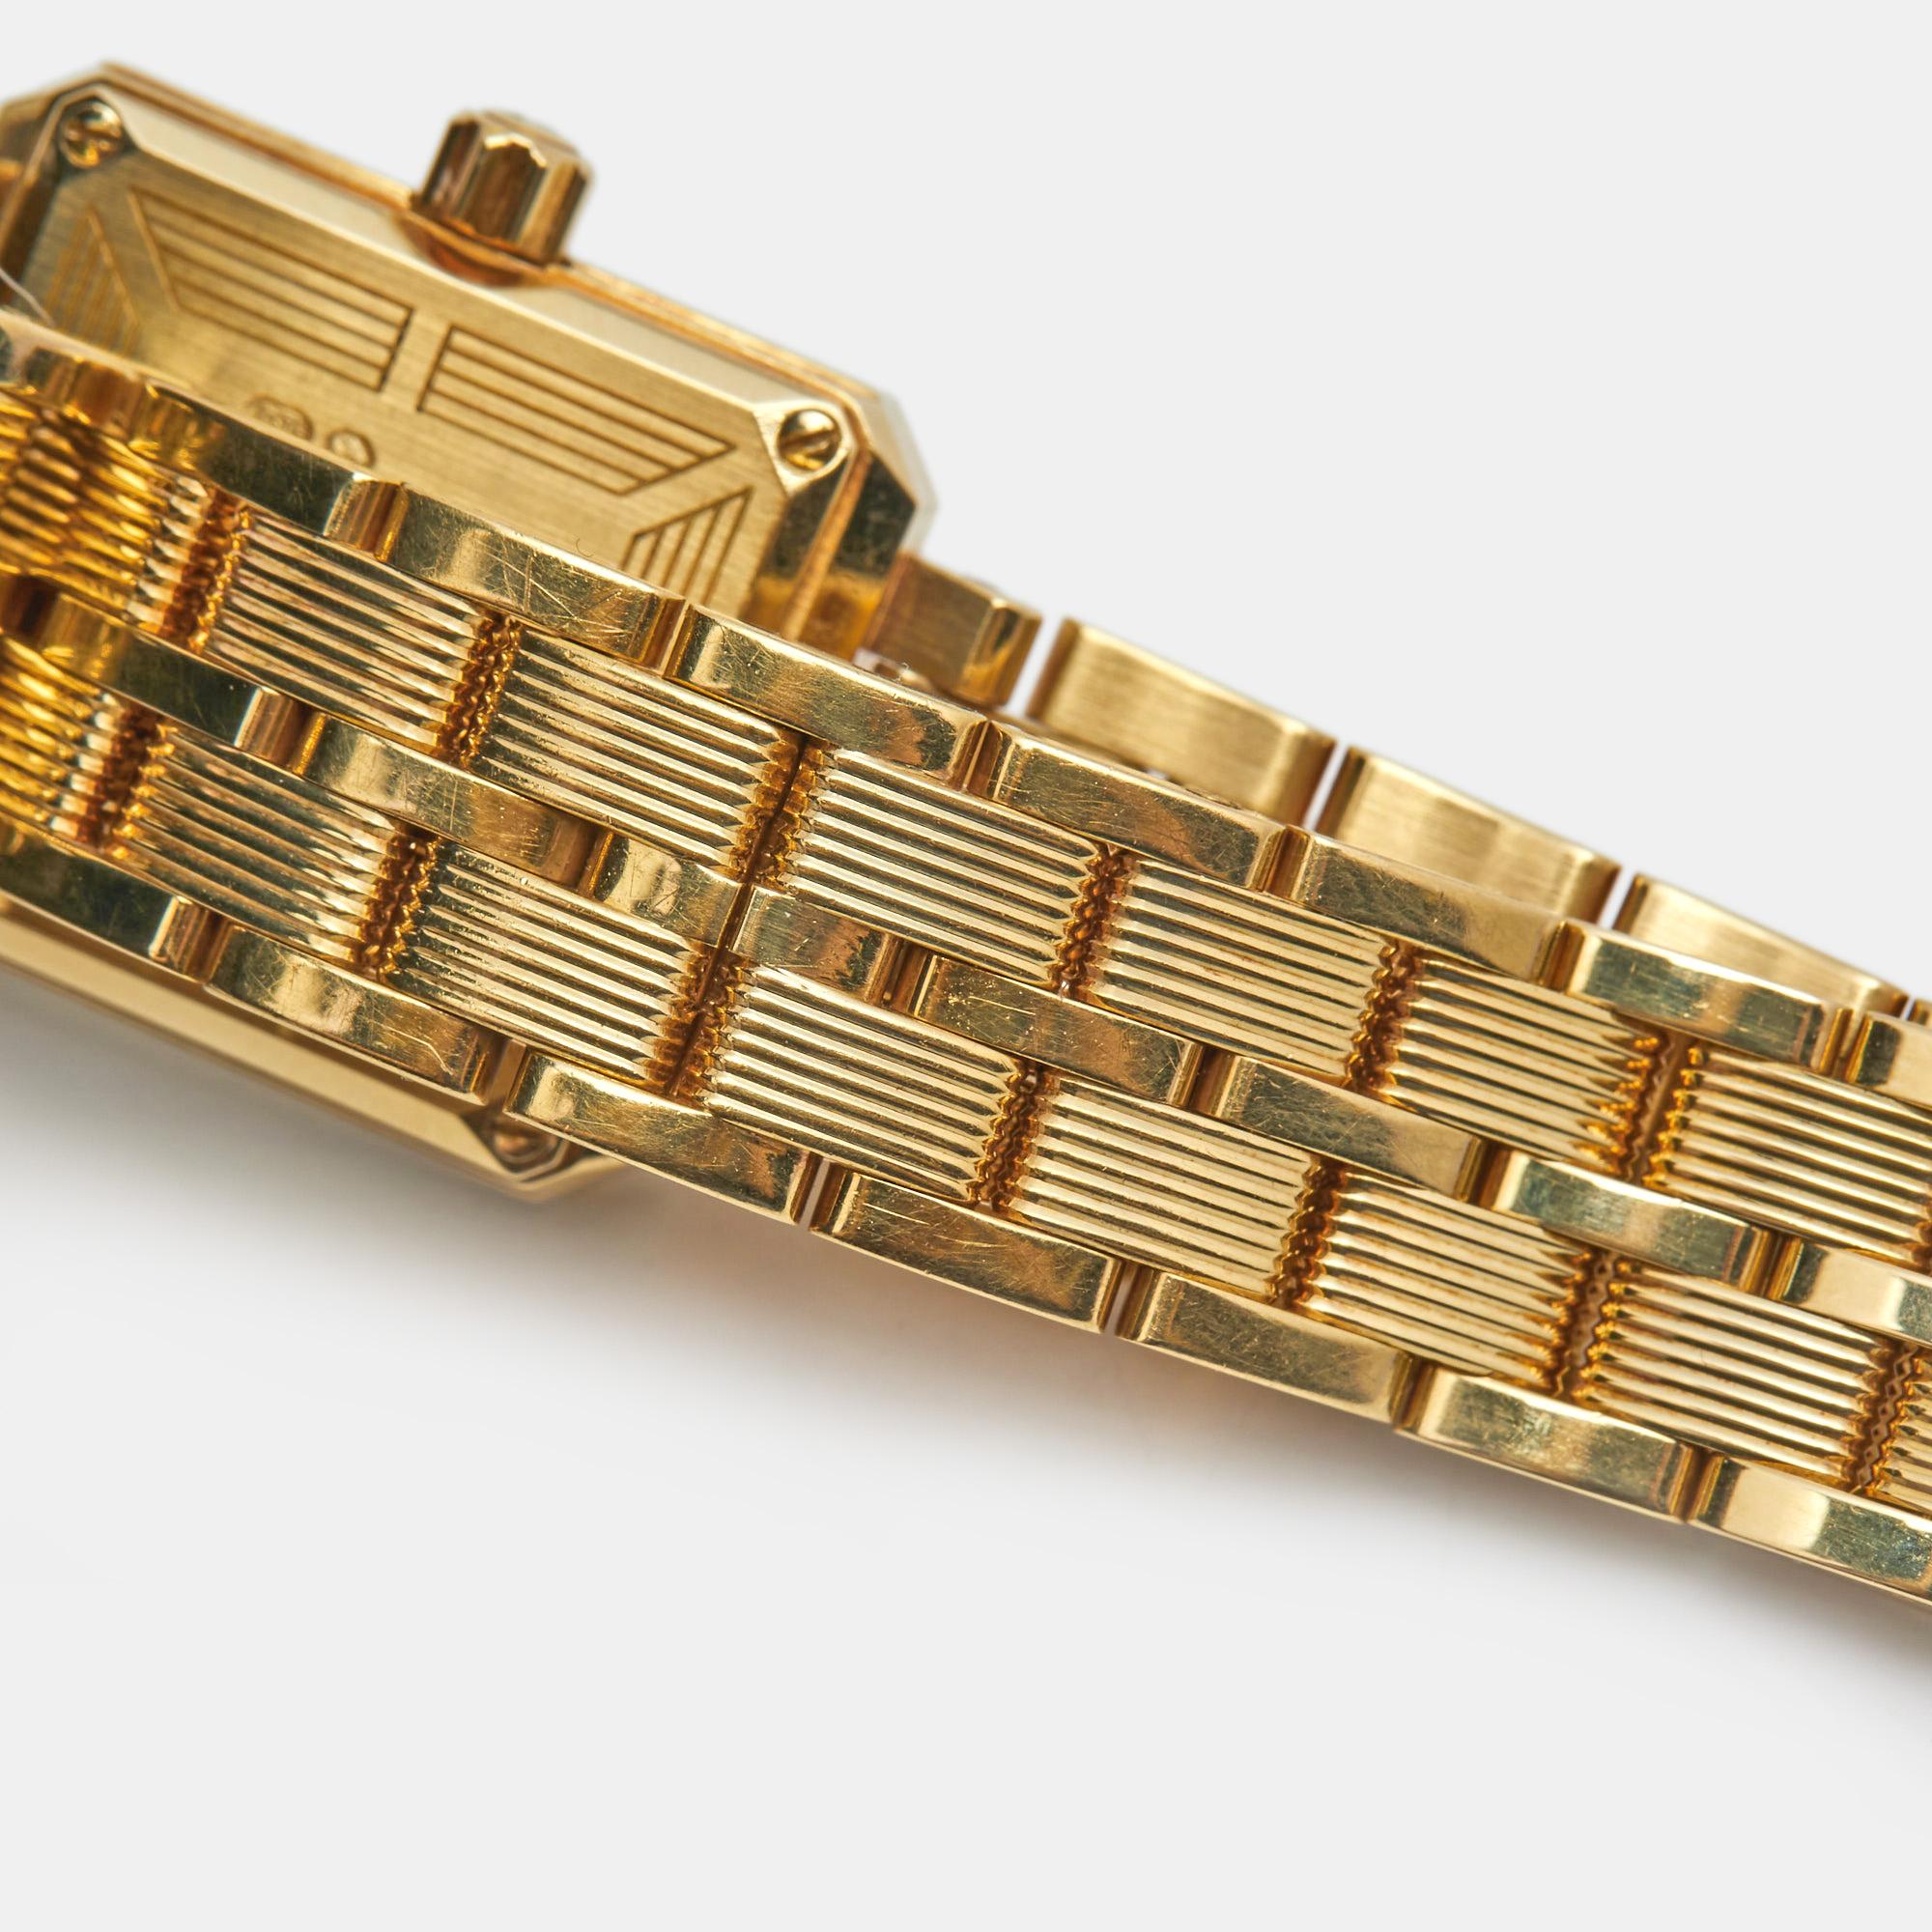 Piaget White 18k Gold Diamond Protocol 5355 M601D Women's Wristwatch 20 mm 2